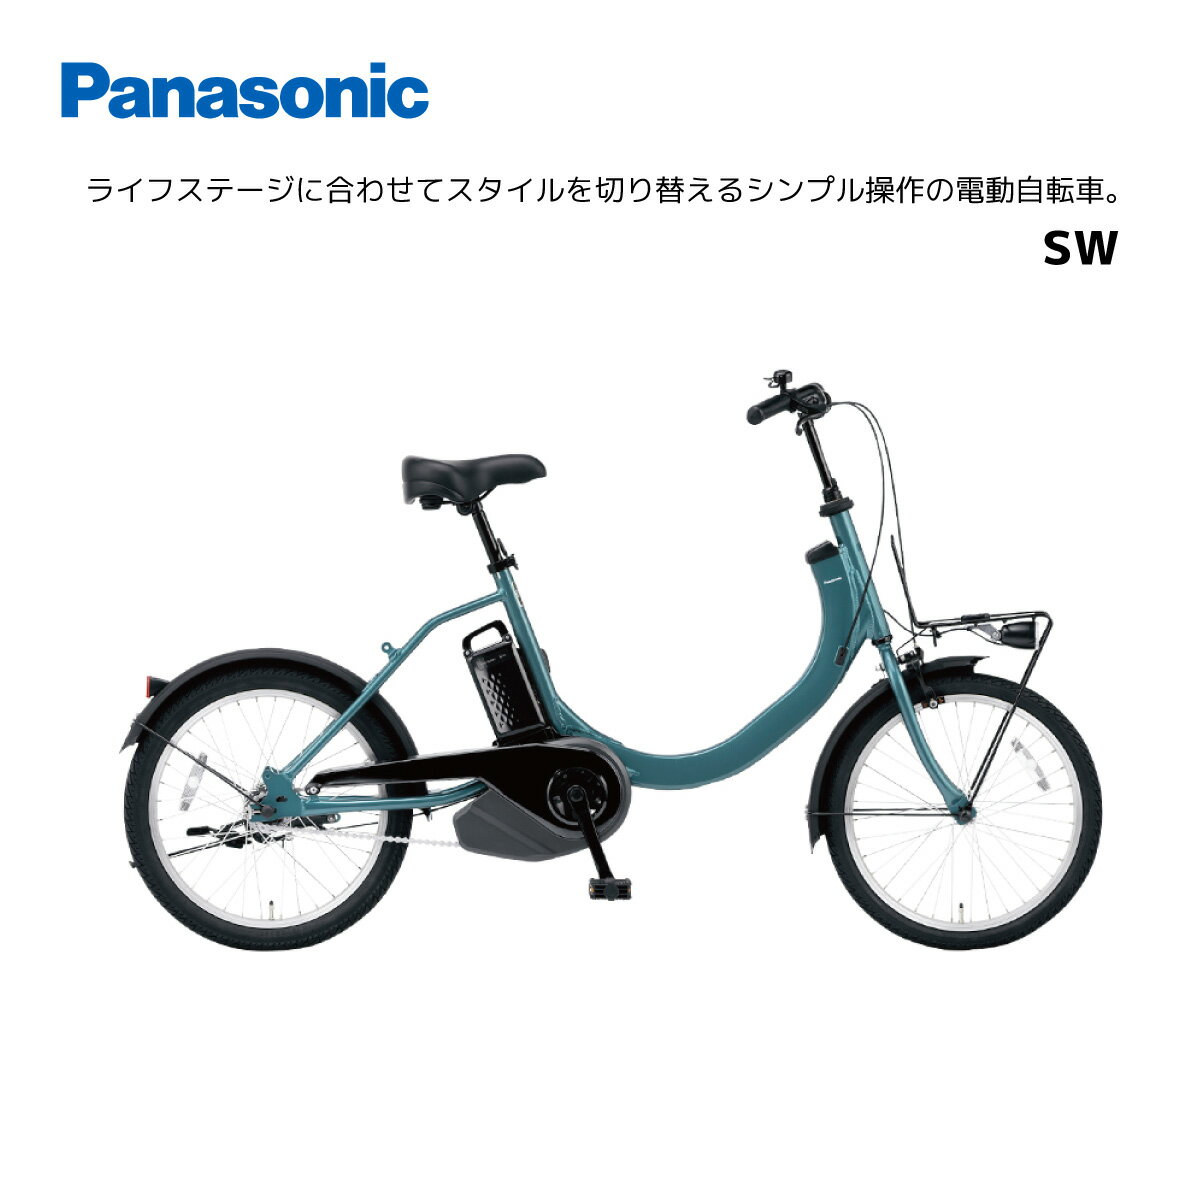 パナソニック SW エスダブル BE-FSW011 20インチ E-BIKE イーバイク 電動自転車 おしゃれ かわいい シンプル 買い物 通勤 通学 チャリ通 人気 黒 白 シングルギア　ギア無し